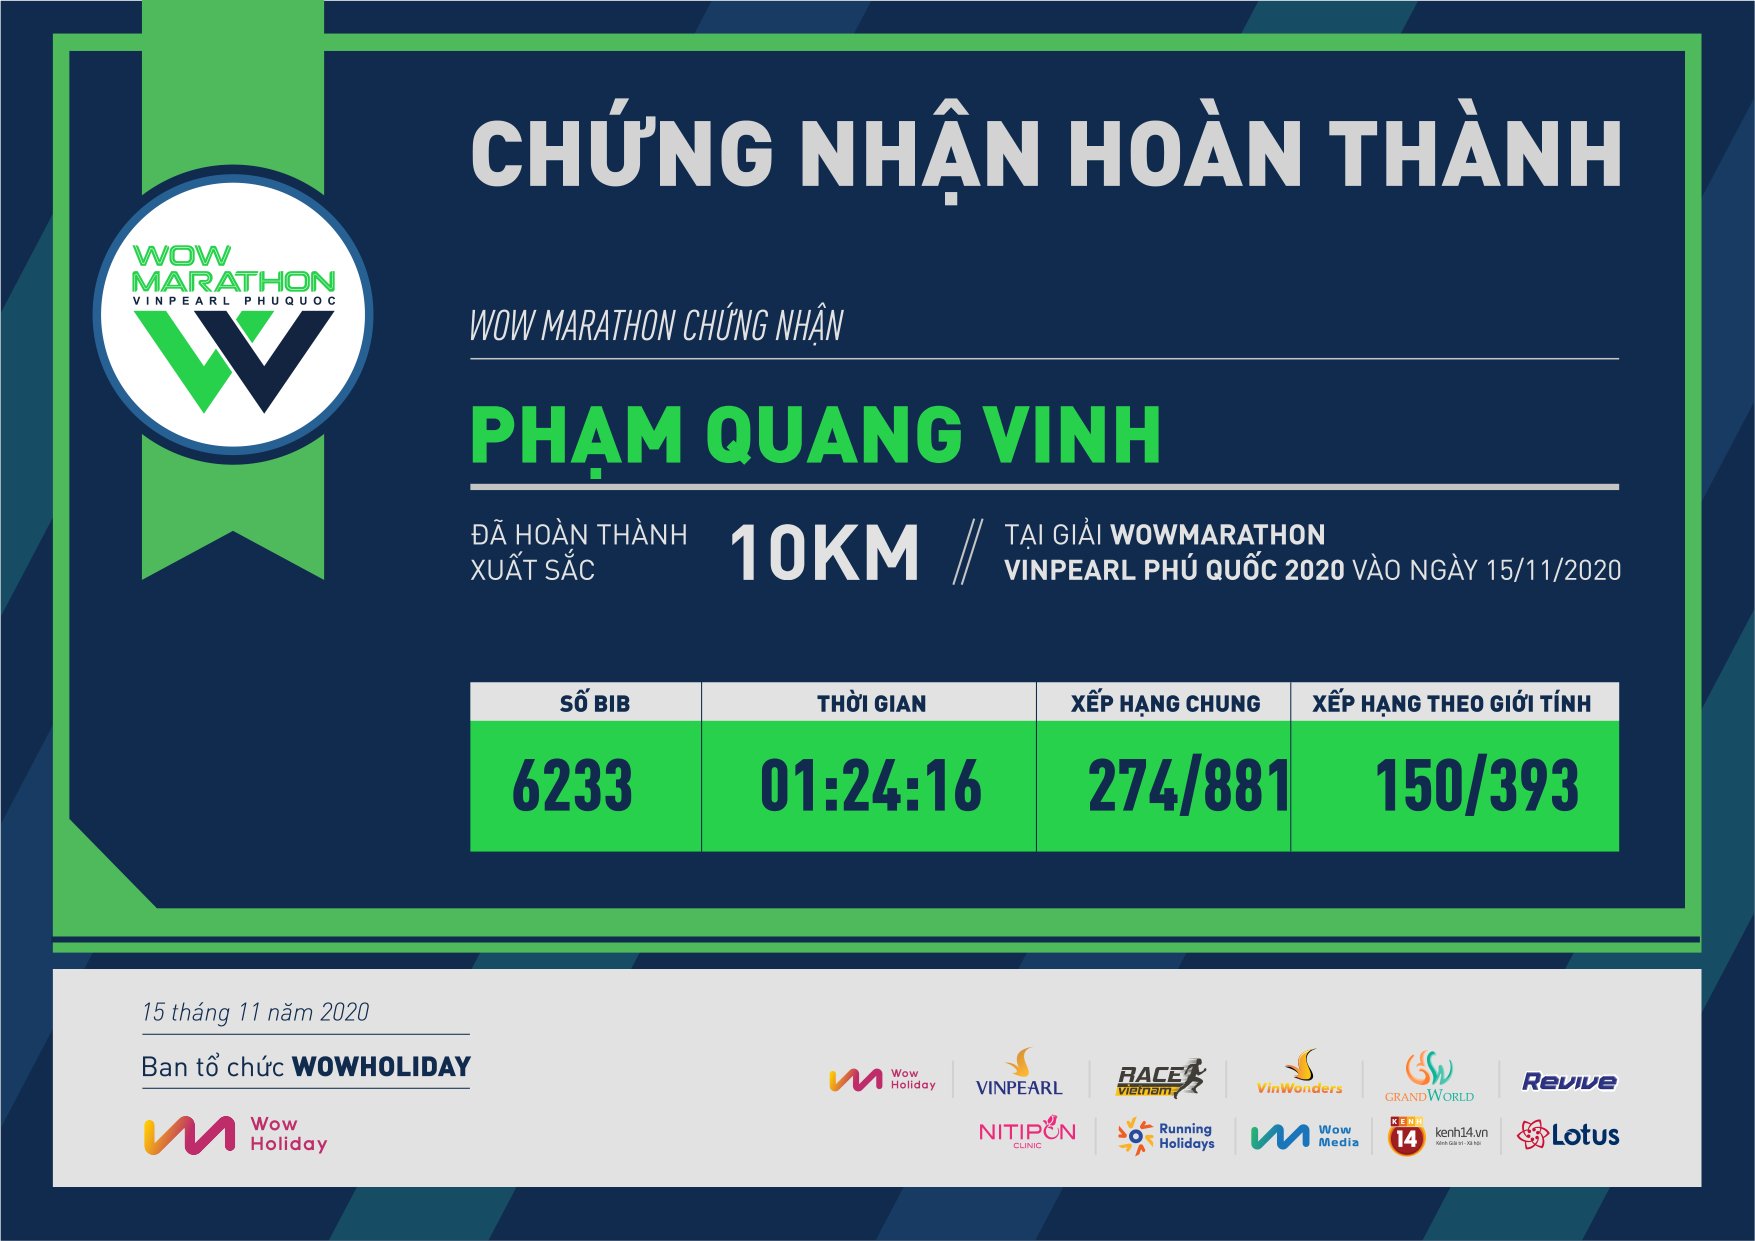 6233 - Phạm Quang Vinh